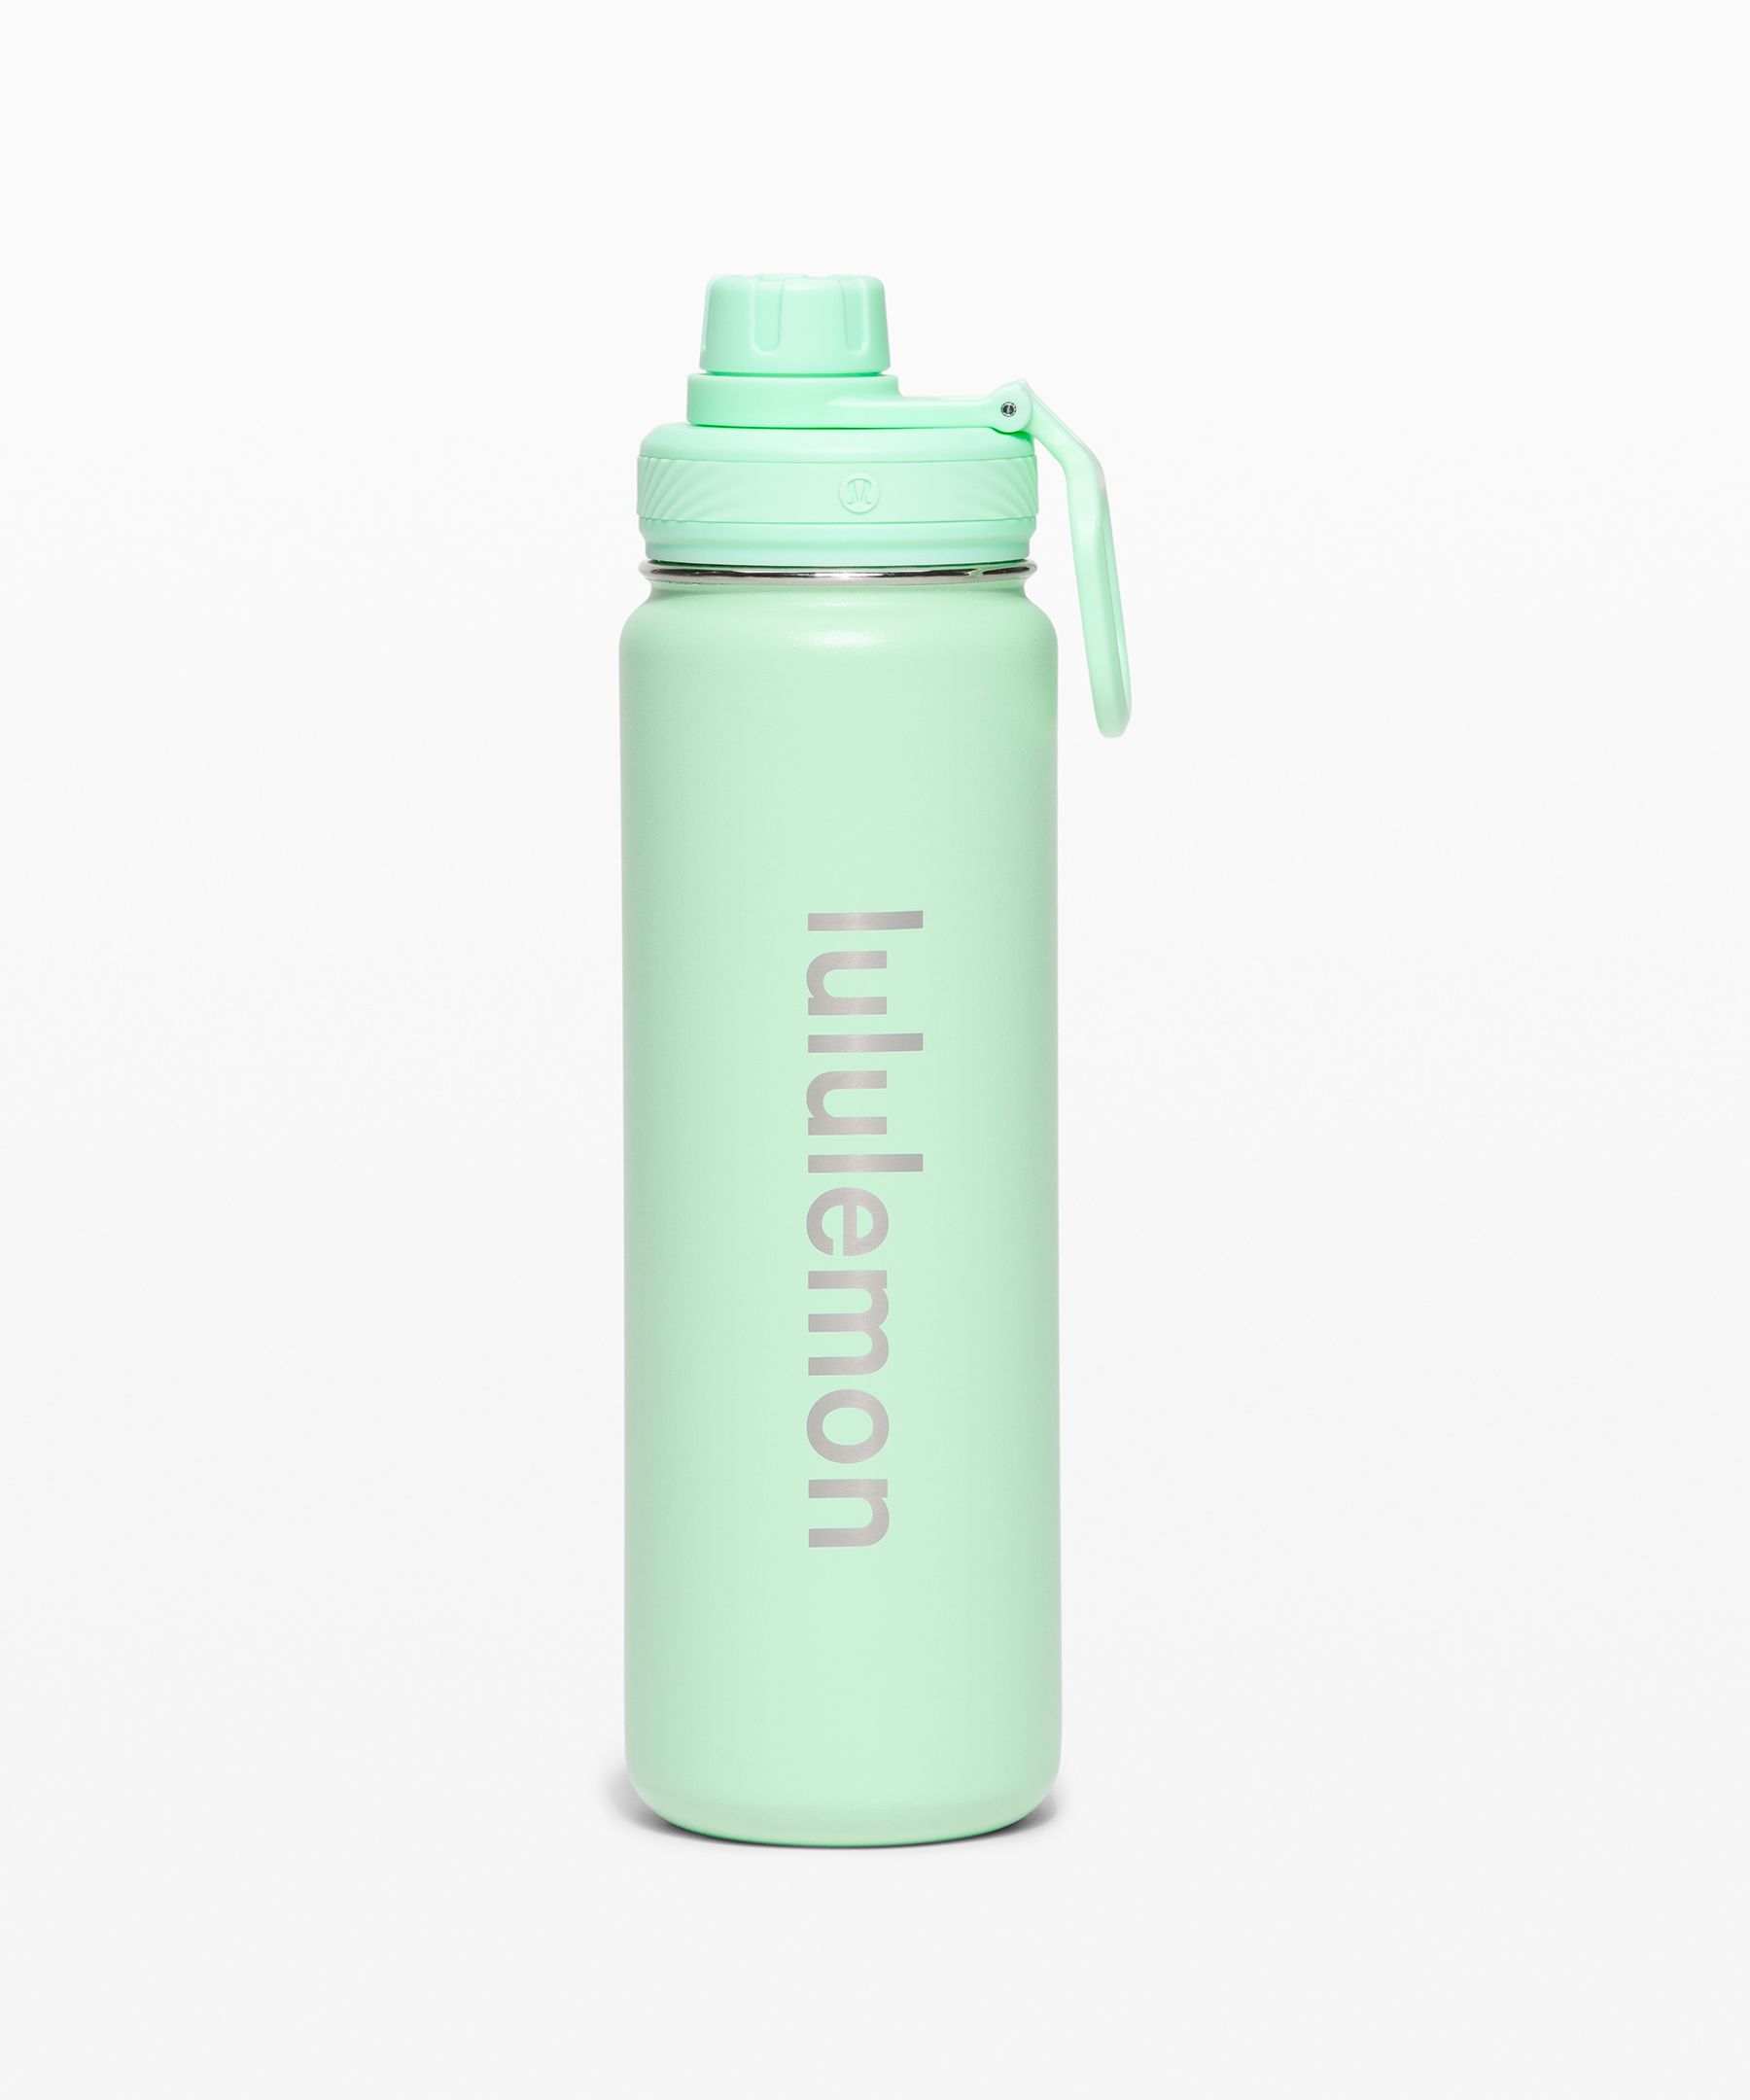 Lululemon Back to Life Shaker Bottle 24oz - Green